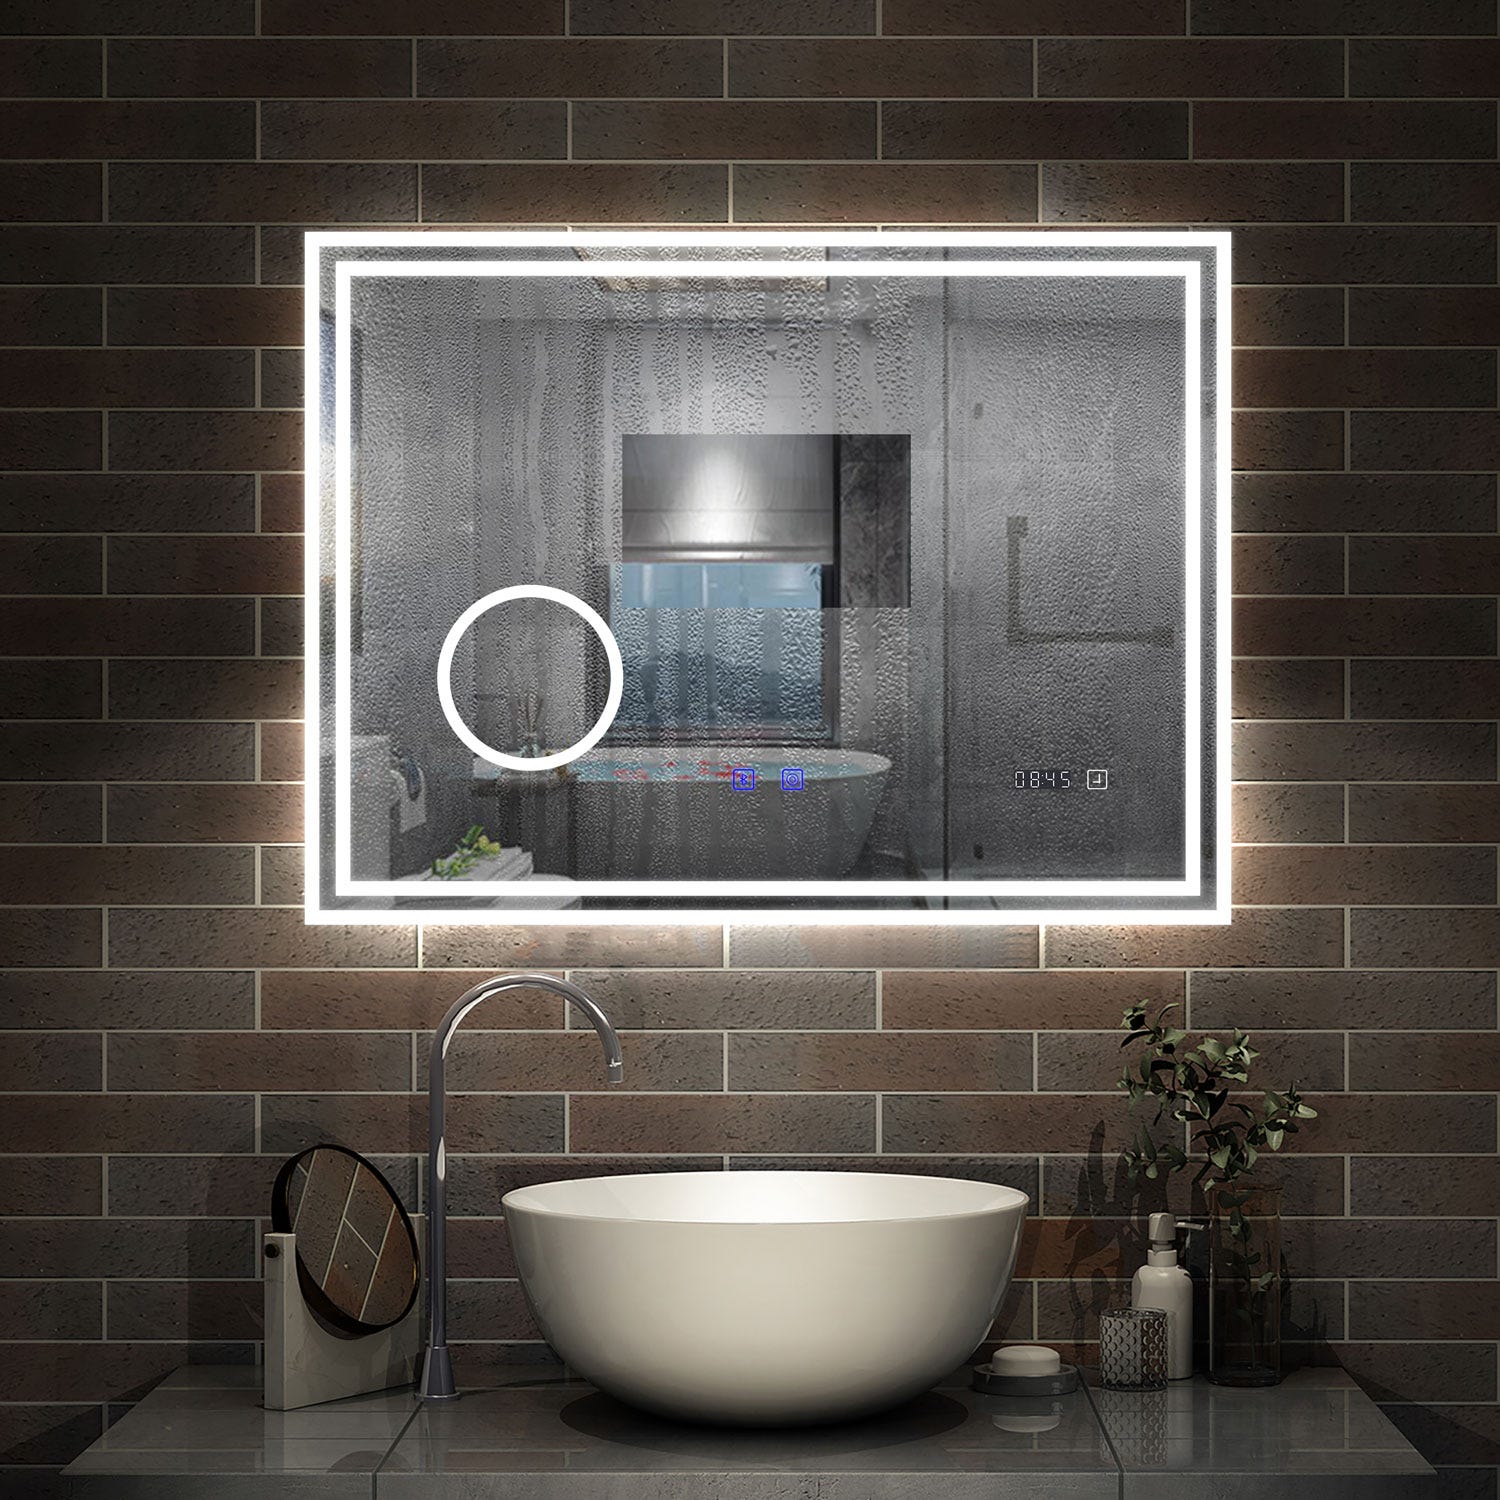 AICA LED miroir 160x80cm horloge + bluetooth + miroir grossissant + tricolore + tactile + anti-buée, suspendu horizontalement ,miroir salle de bain 2